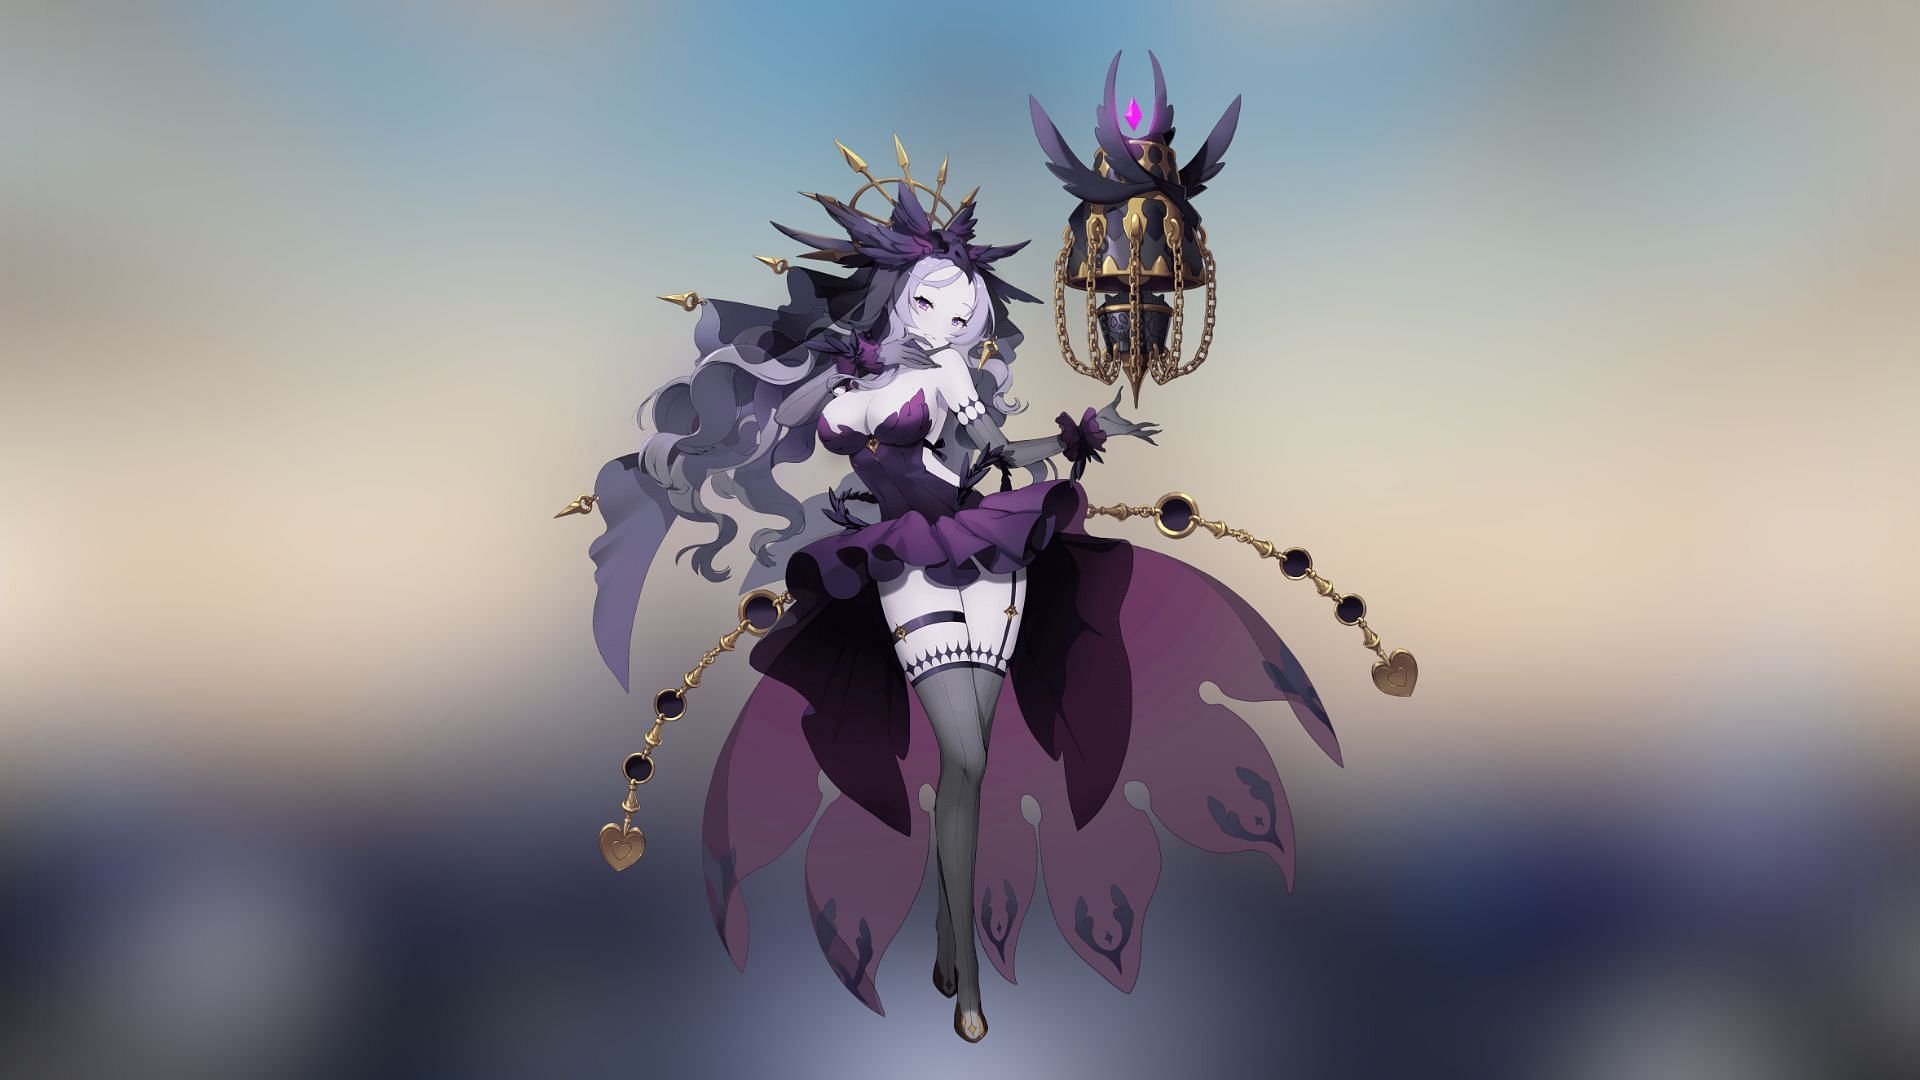 Violette in Eversoul (Image via Kakao Games)